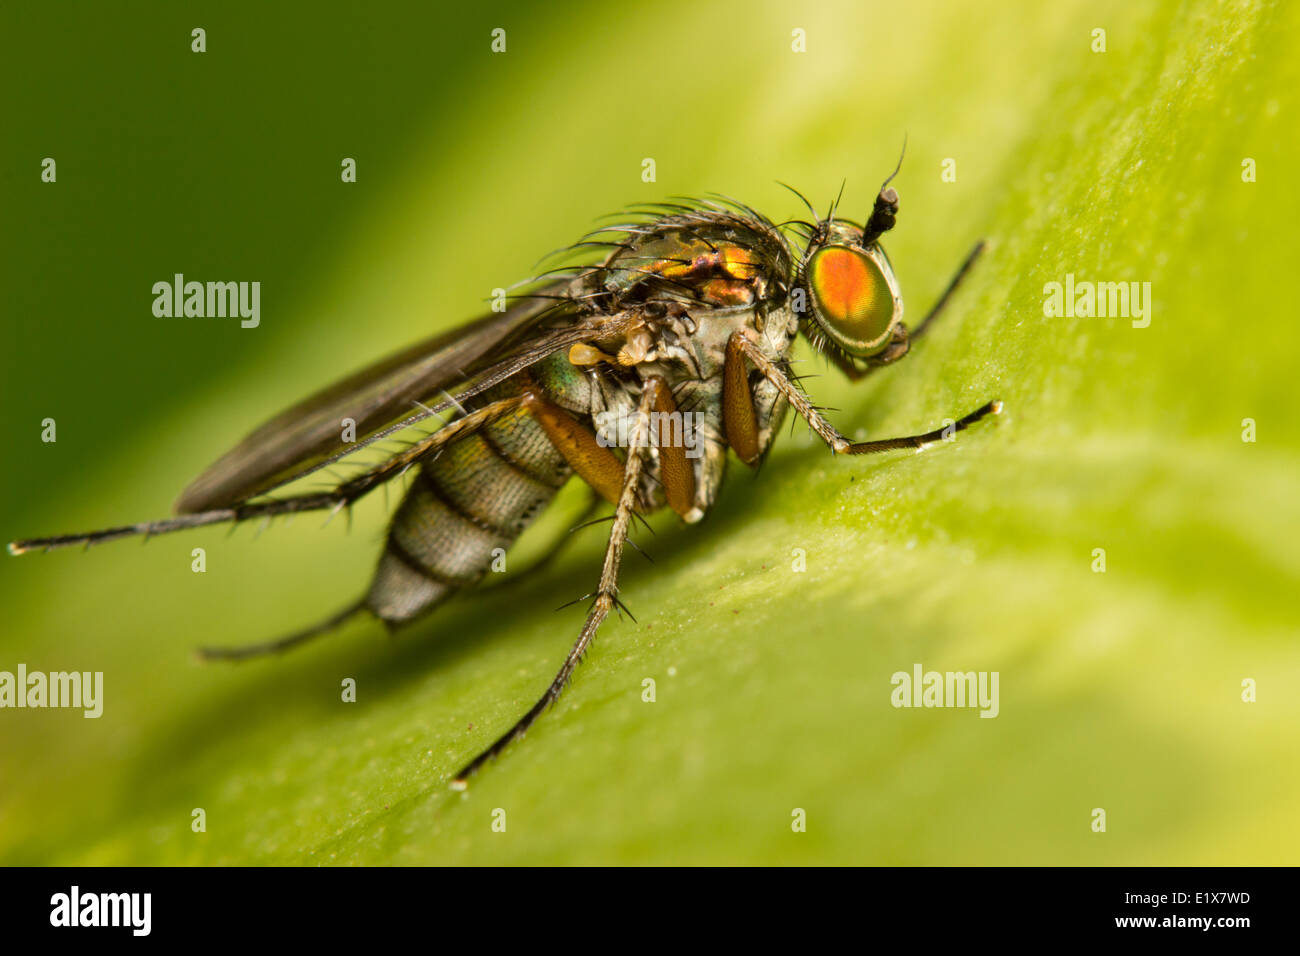 Macro insect shot of a female long legged fly, Dolichopus ungulatus Stock Photo